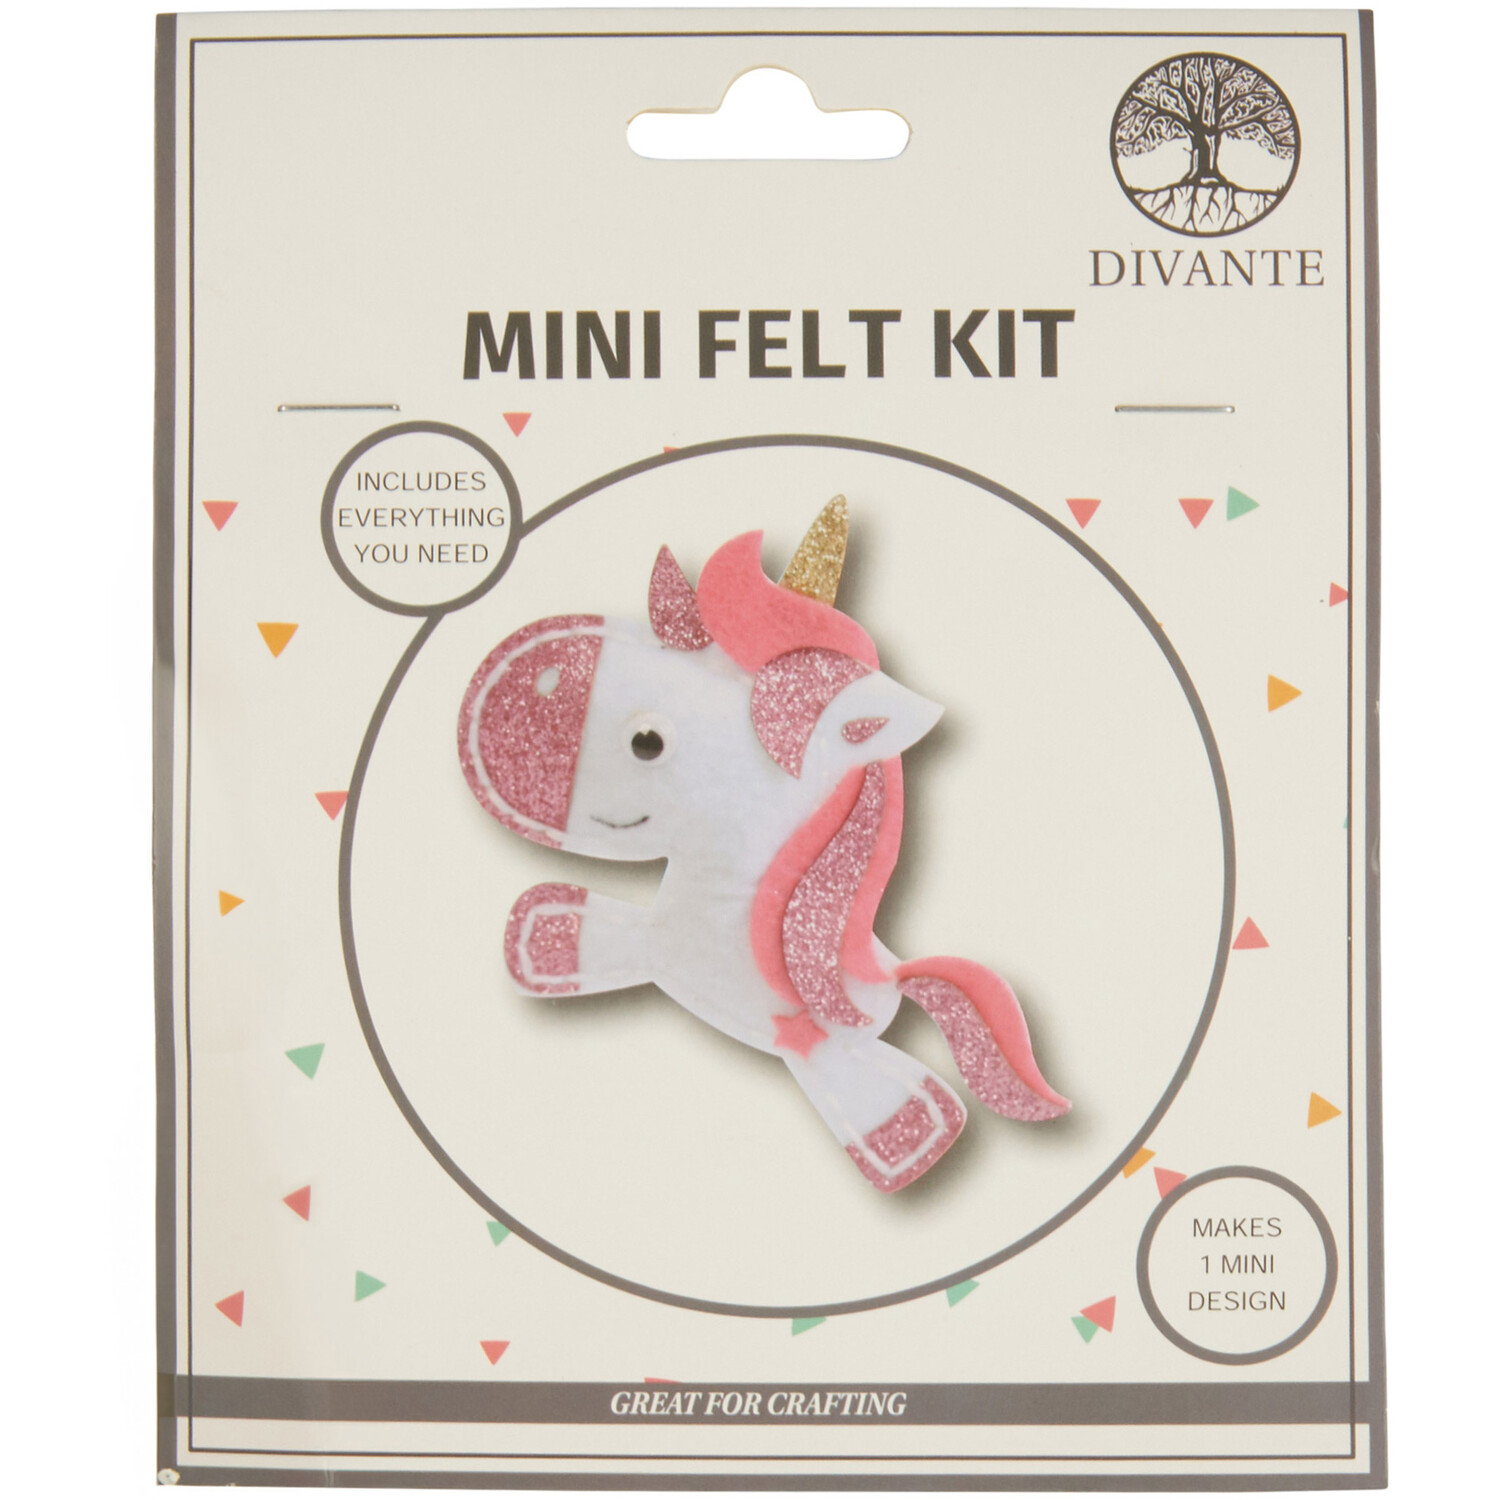 Divante Mini Felt Kit Image 1